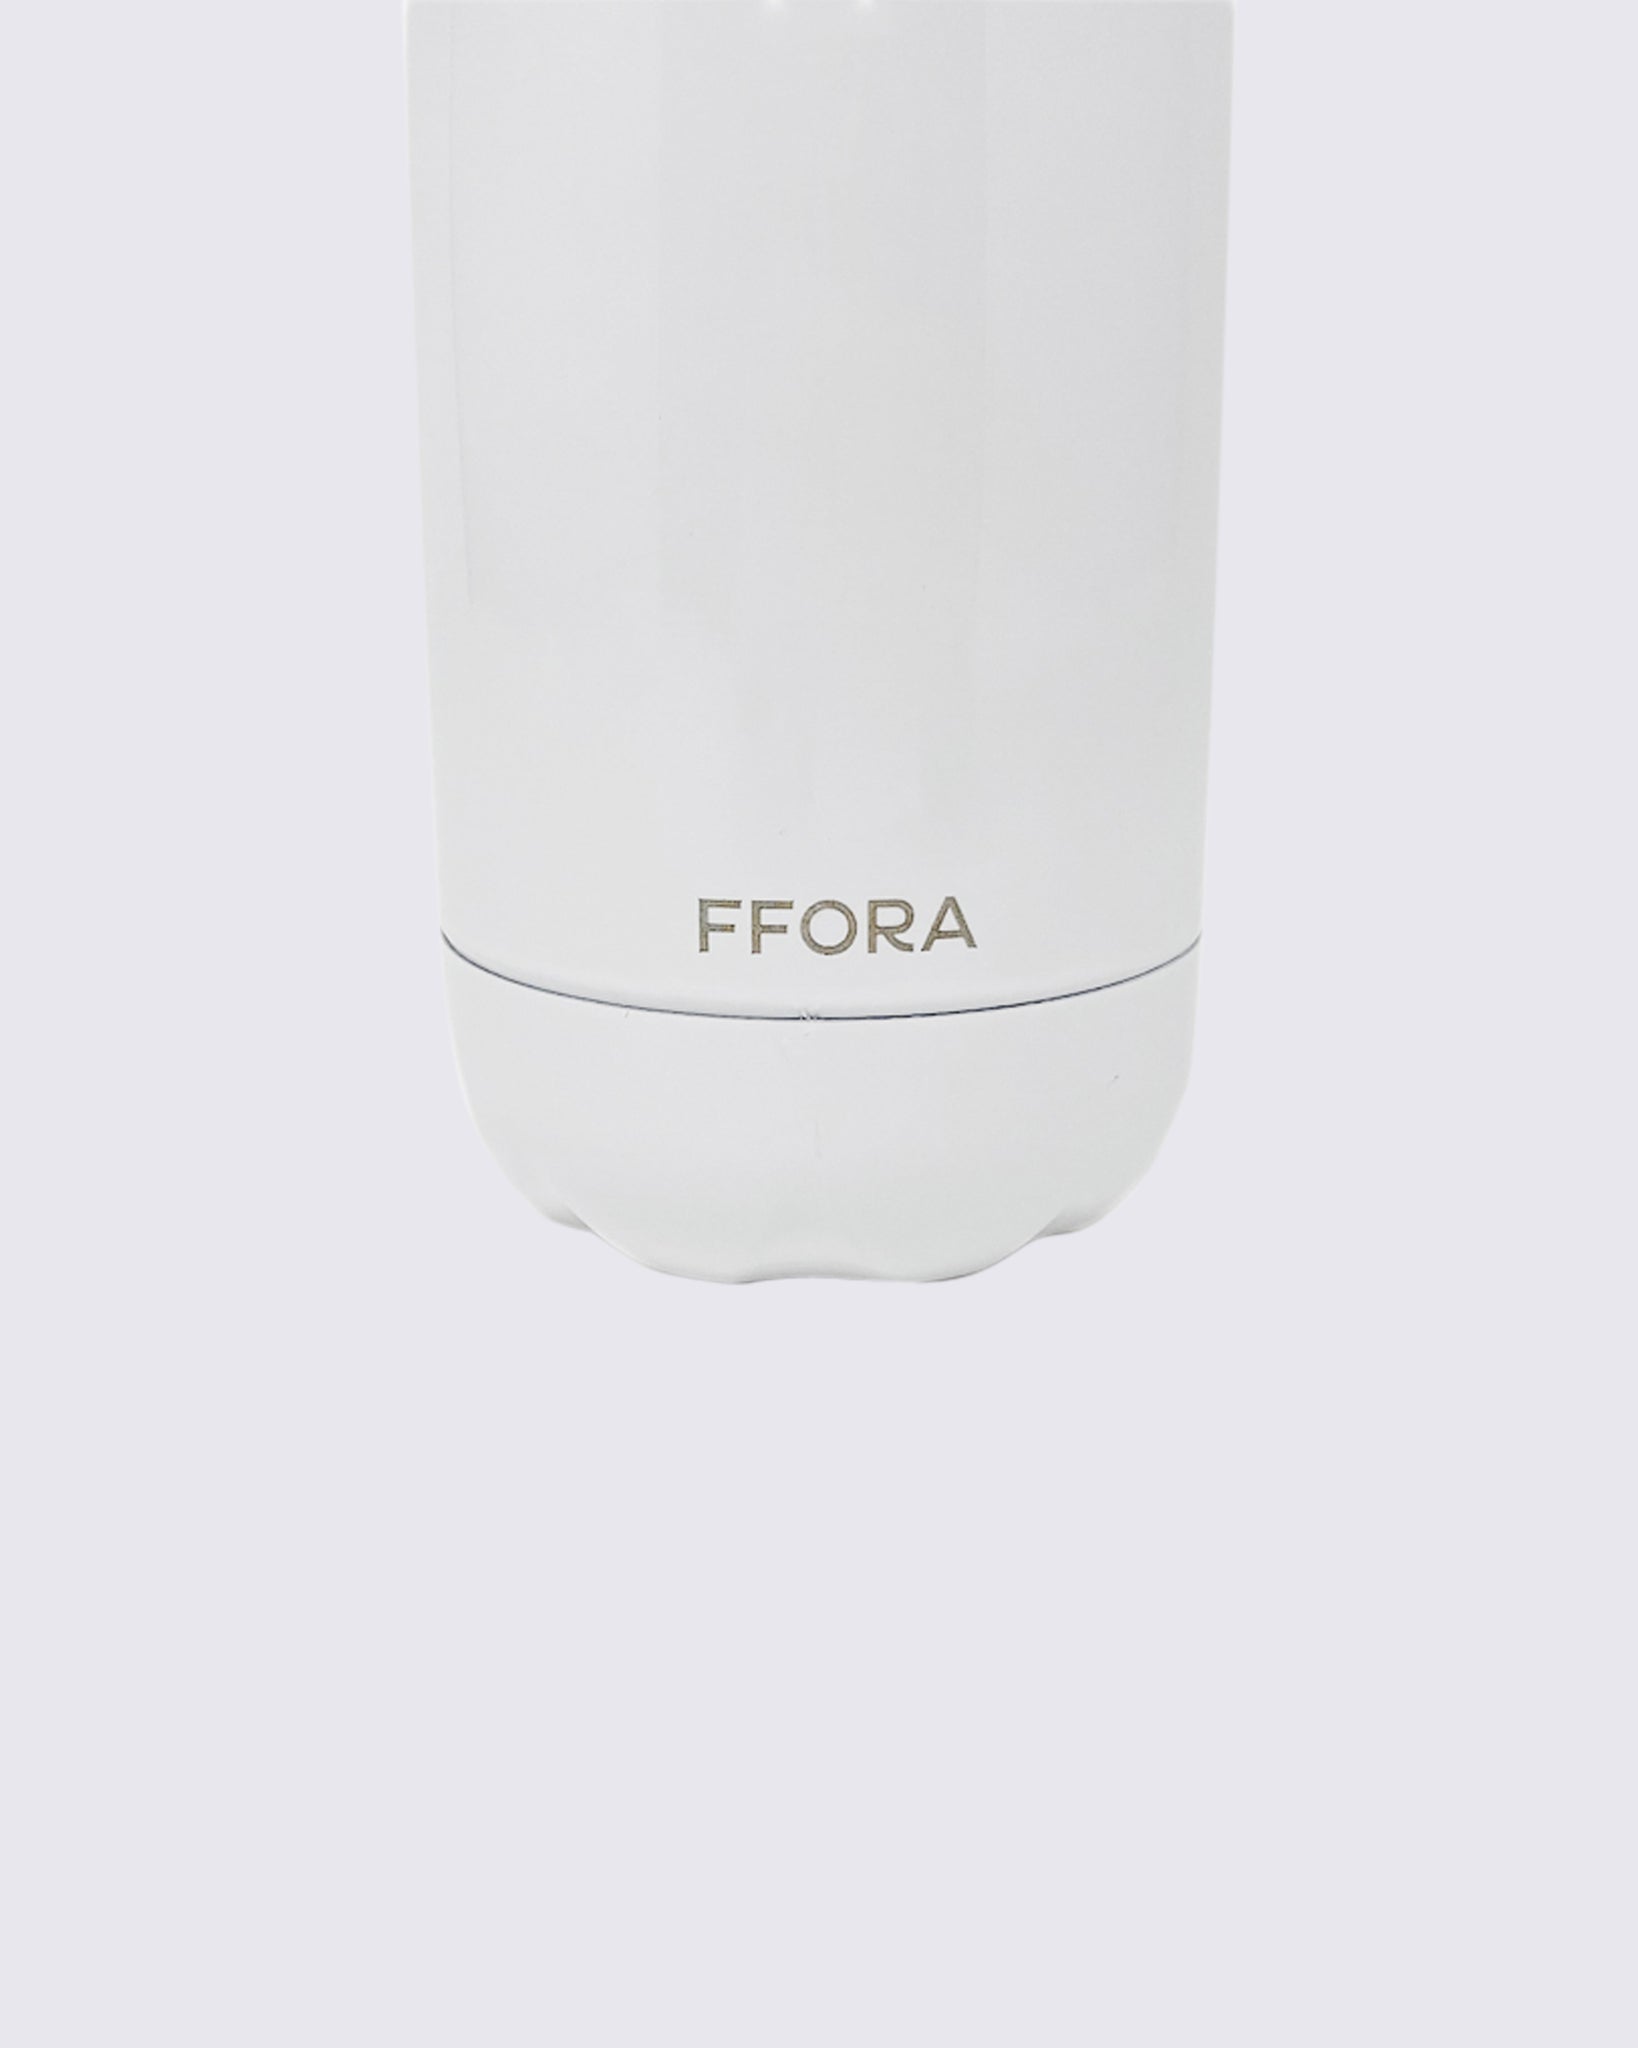 FFORA Bottle